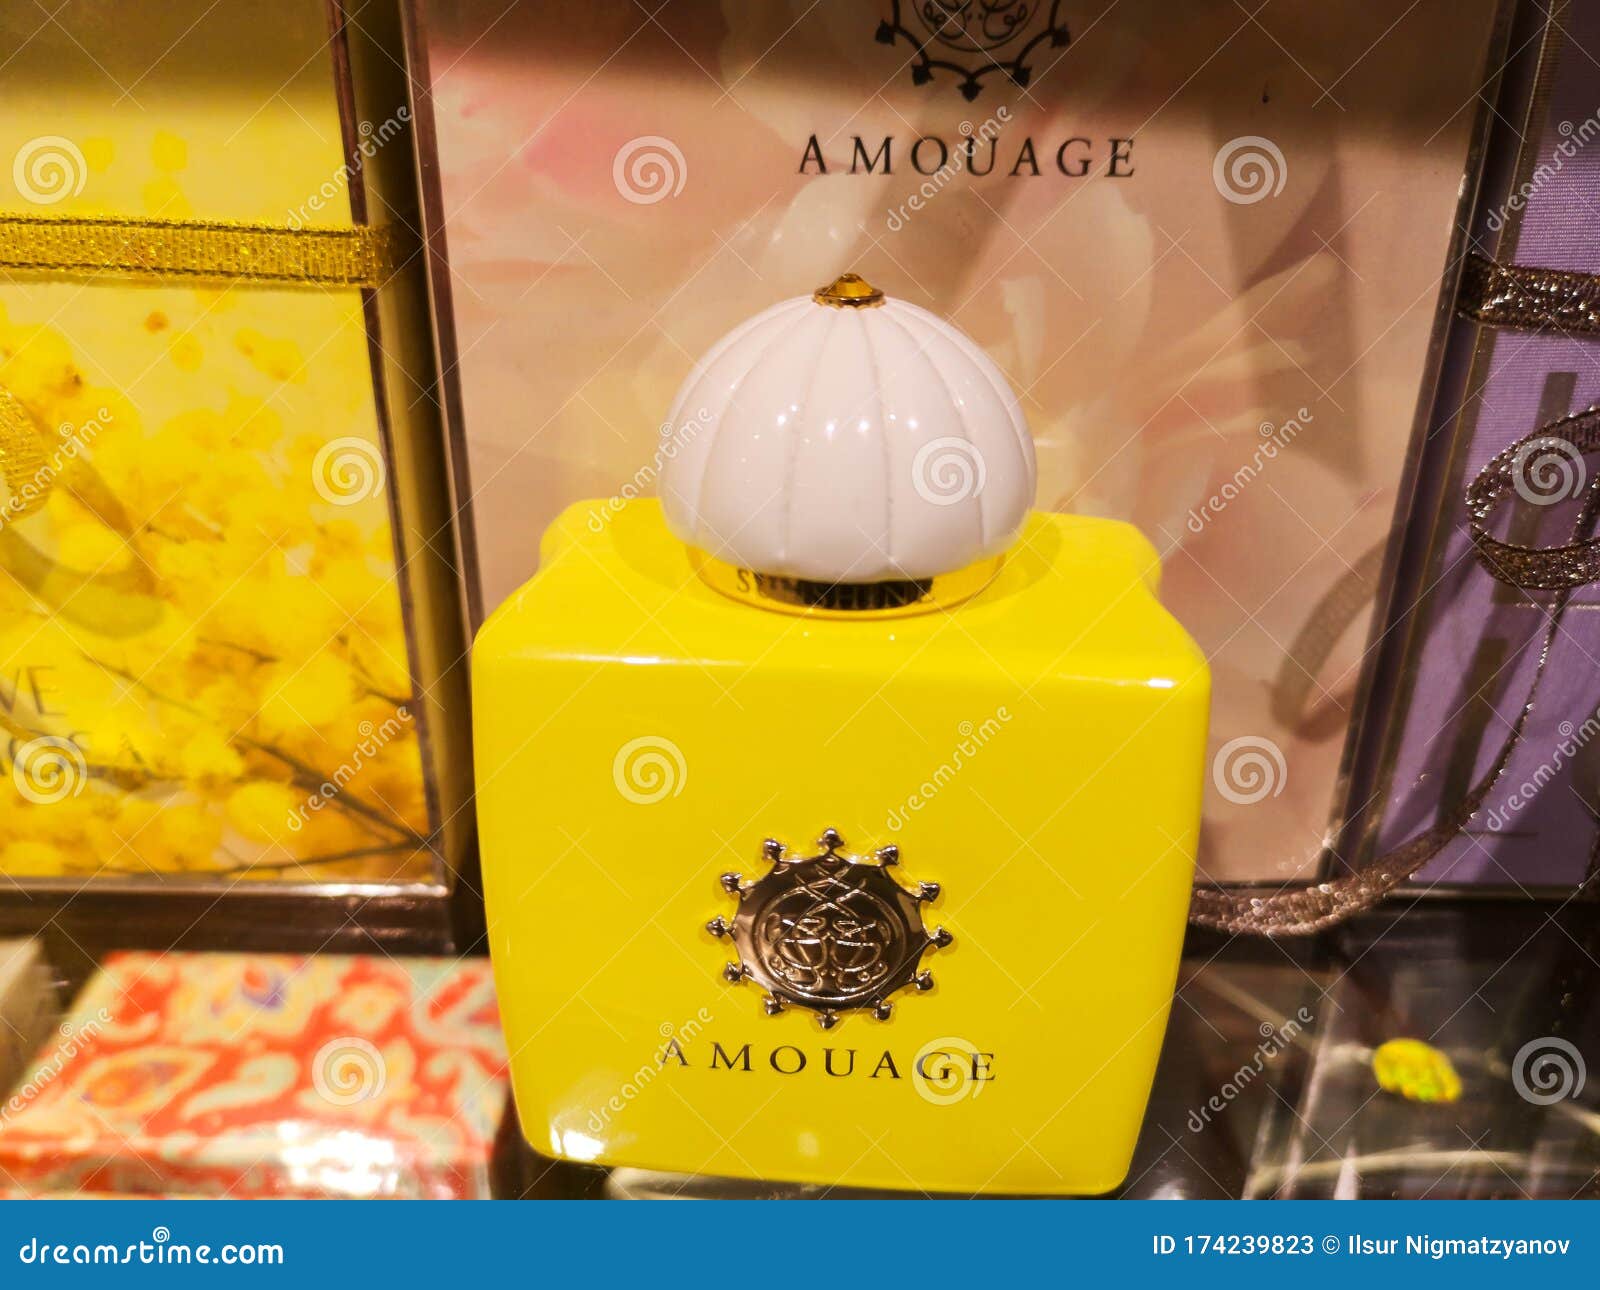 Amouage Love Mimosa Gift Set